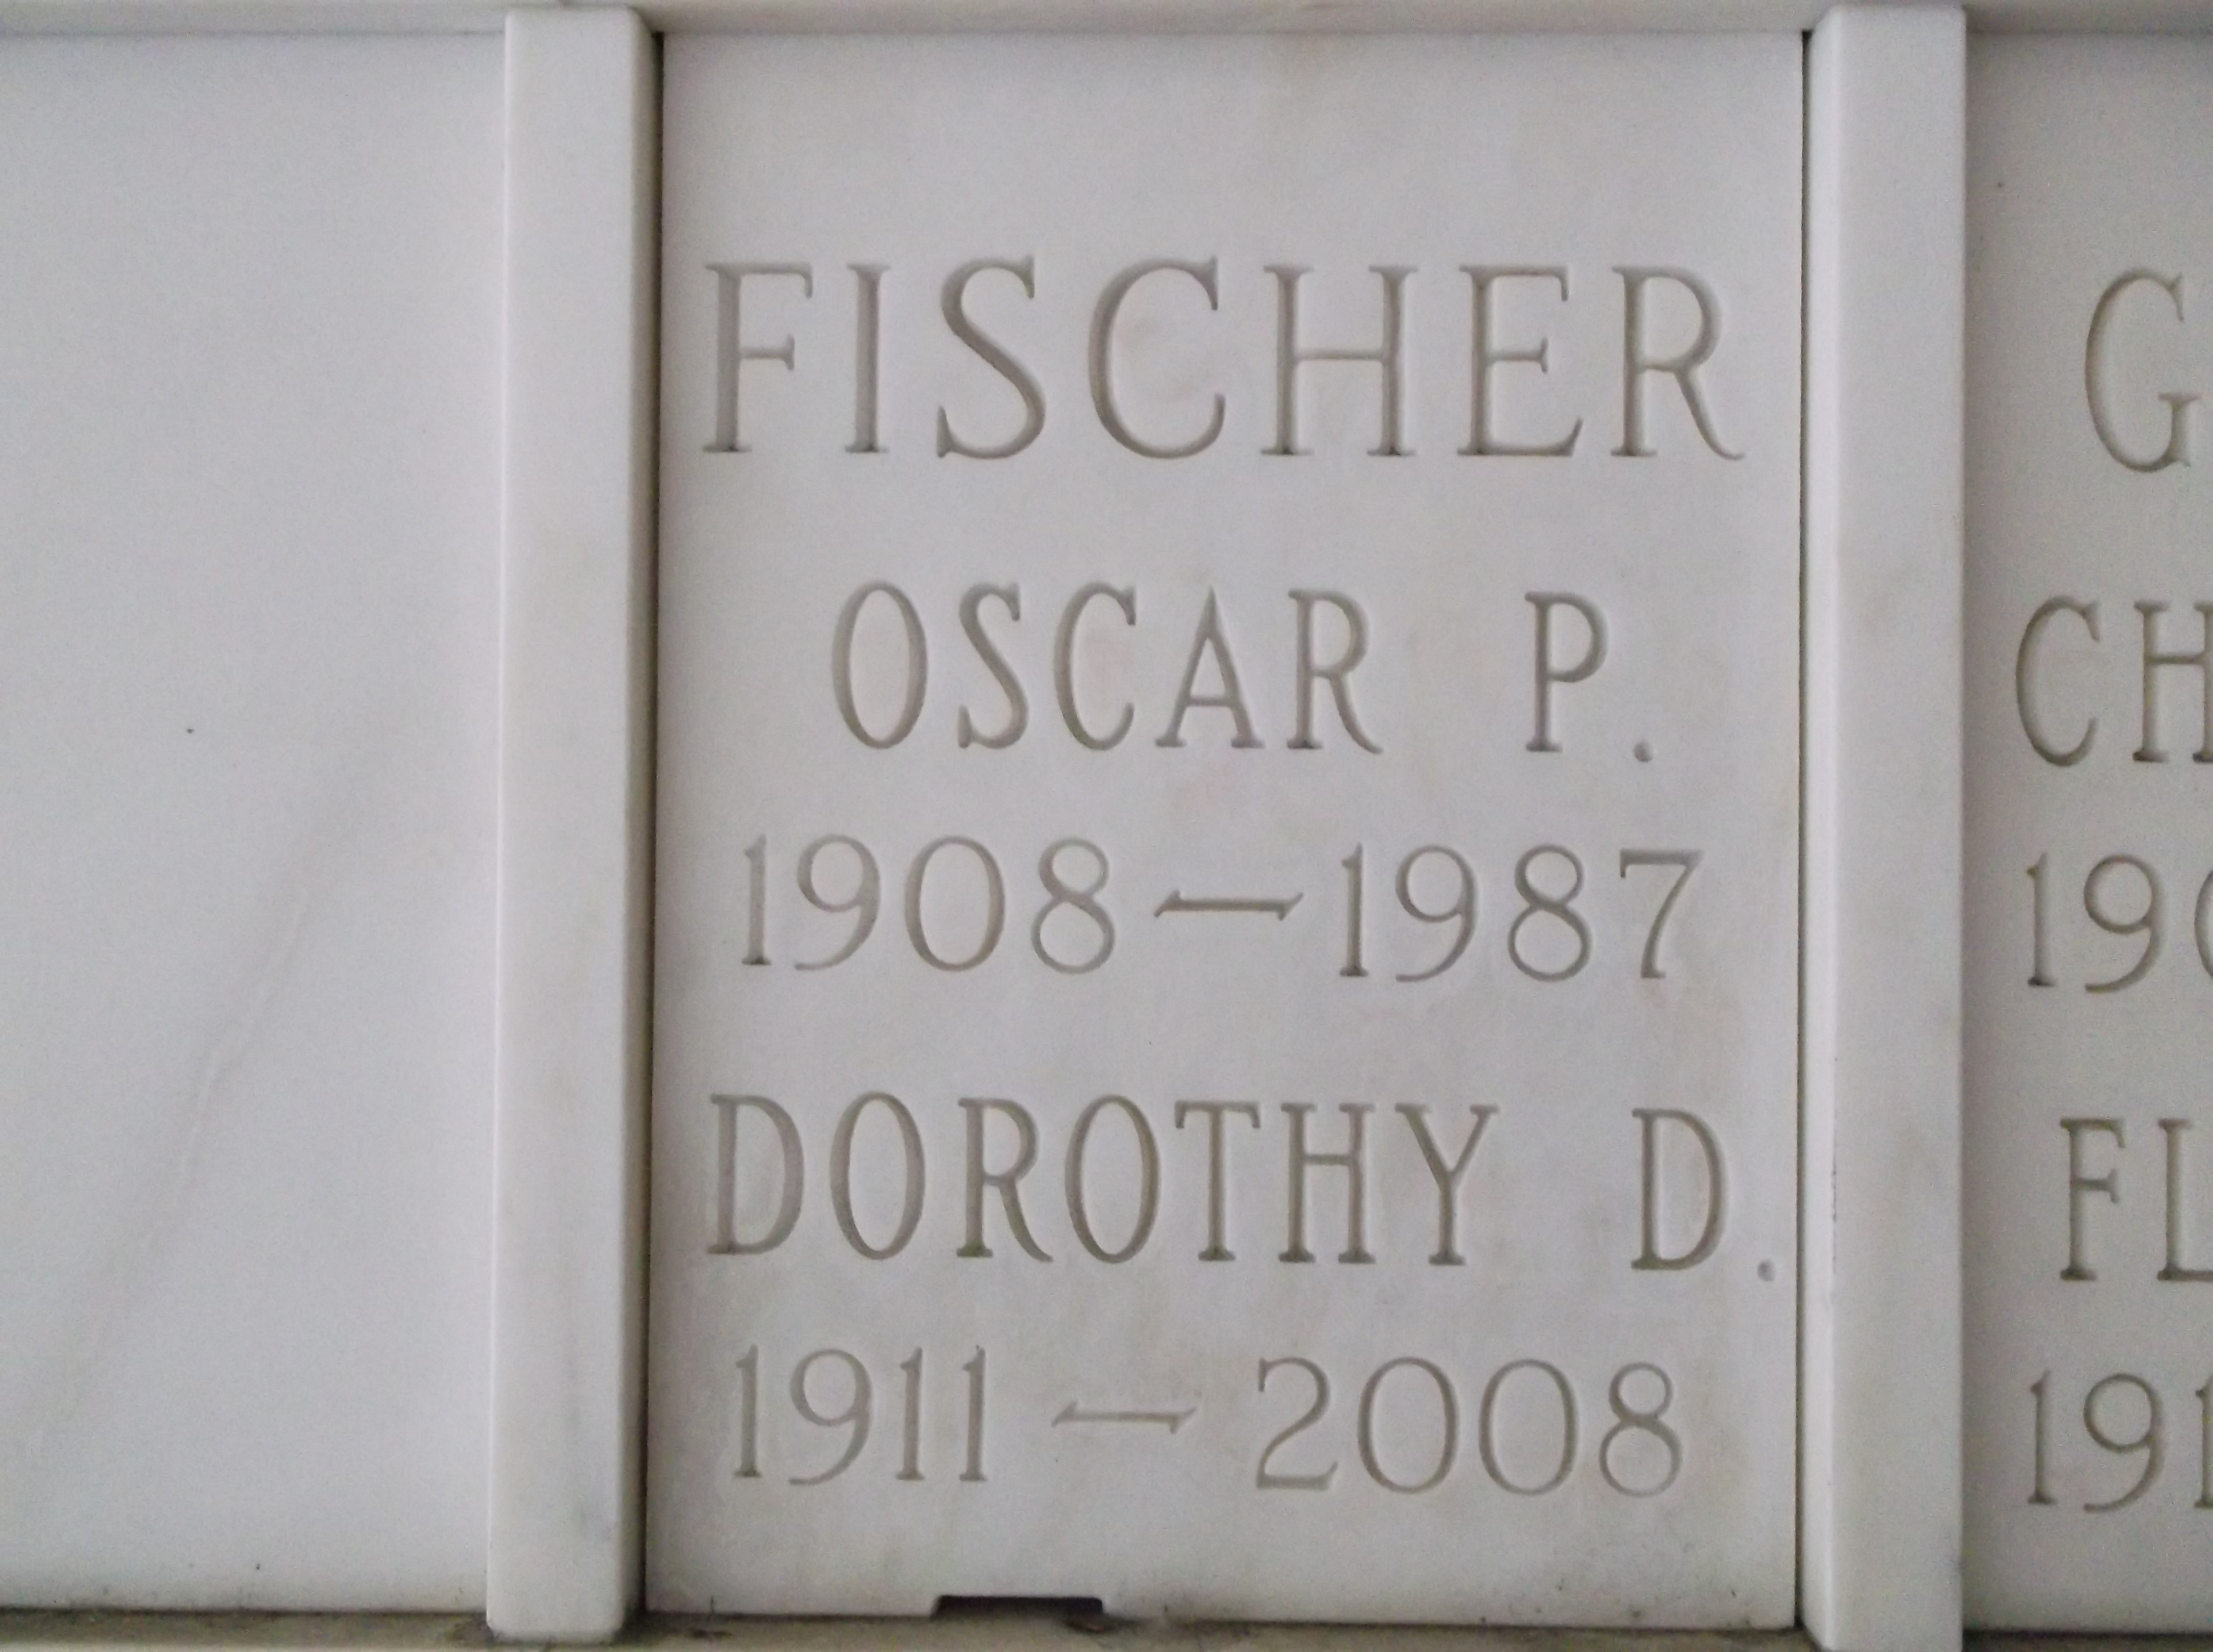 Oscar P Fischer